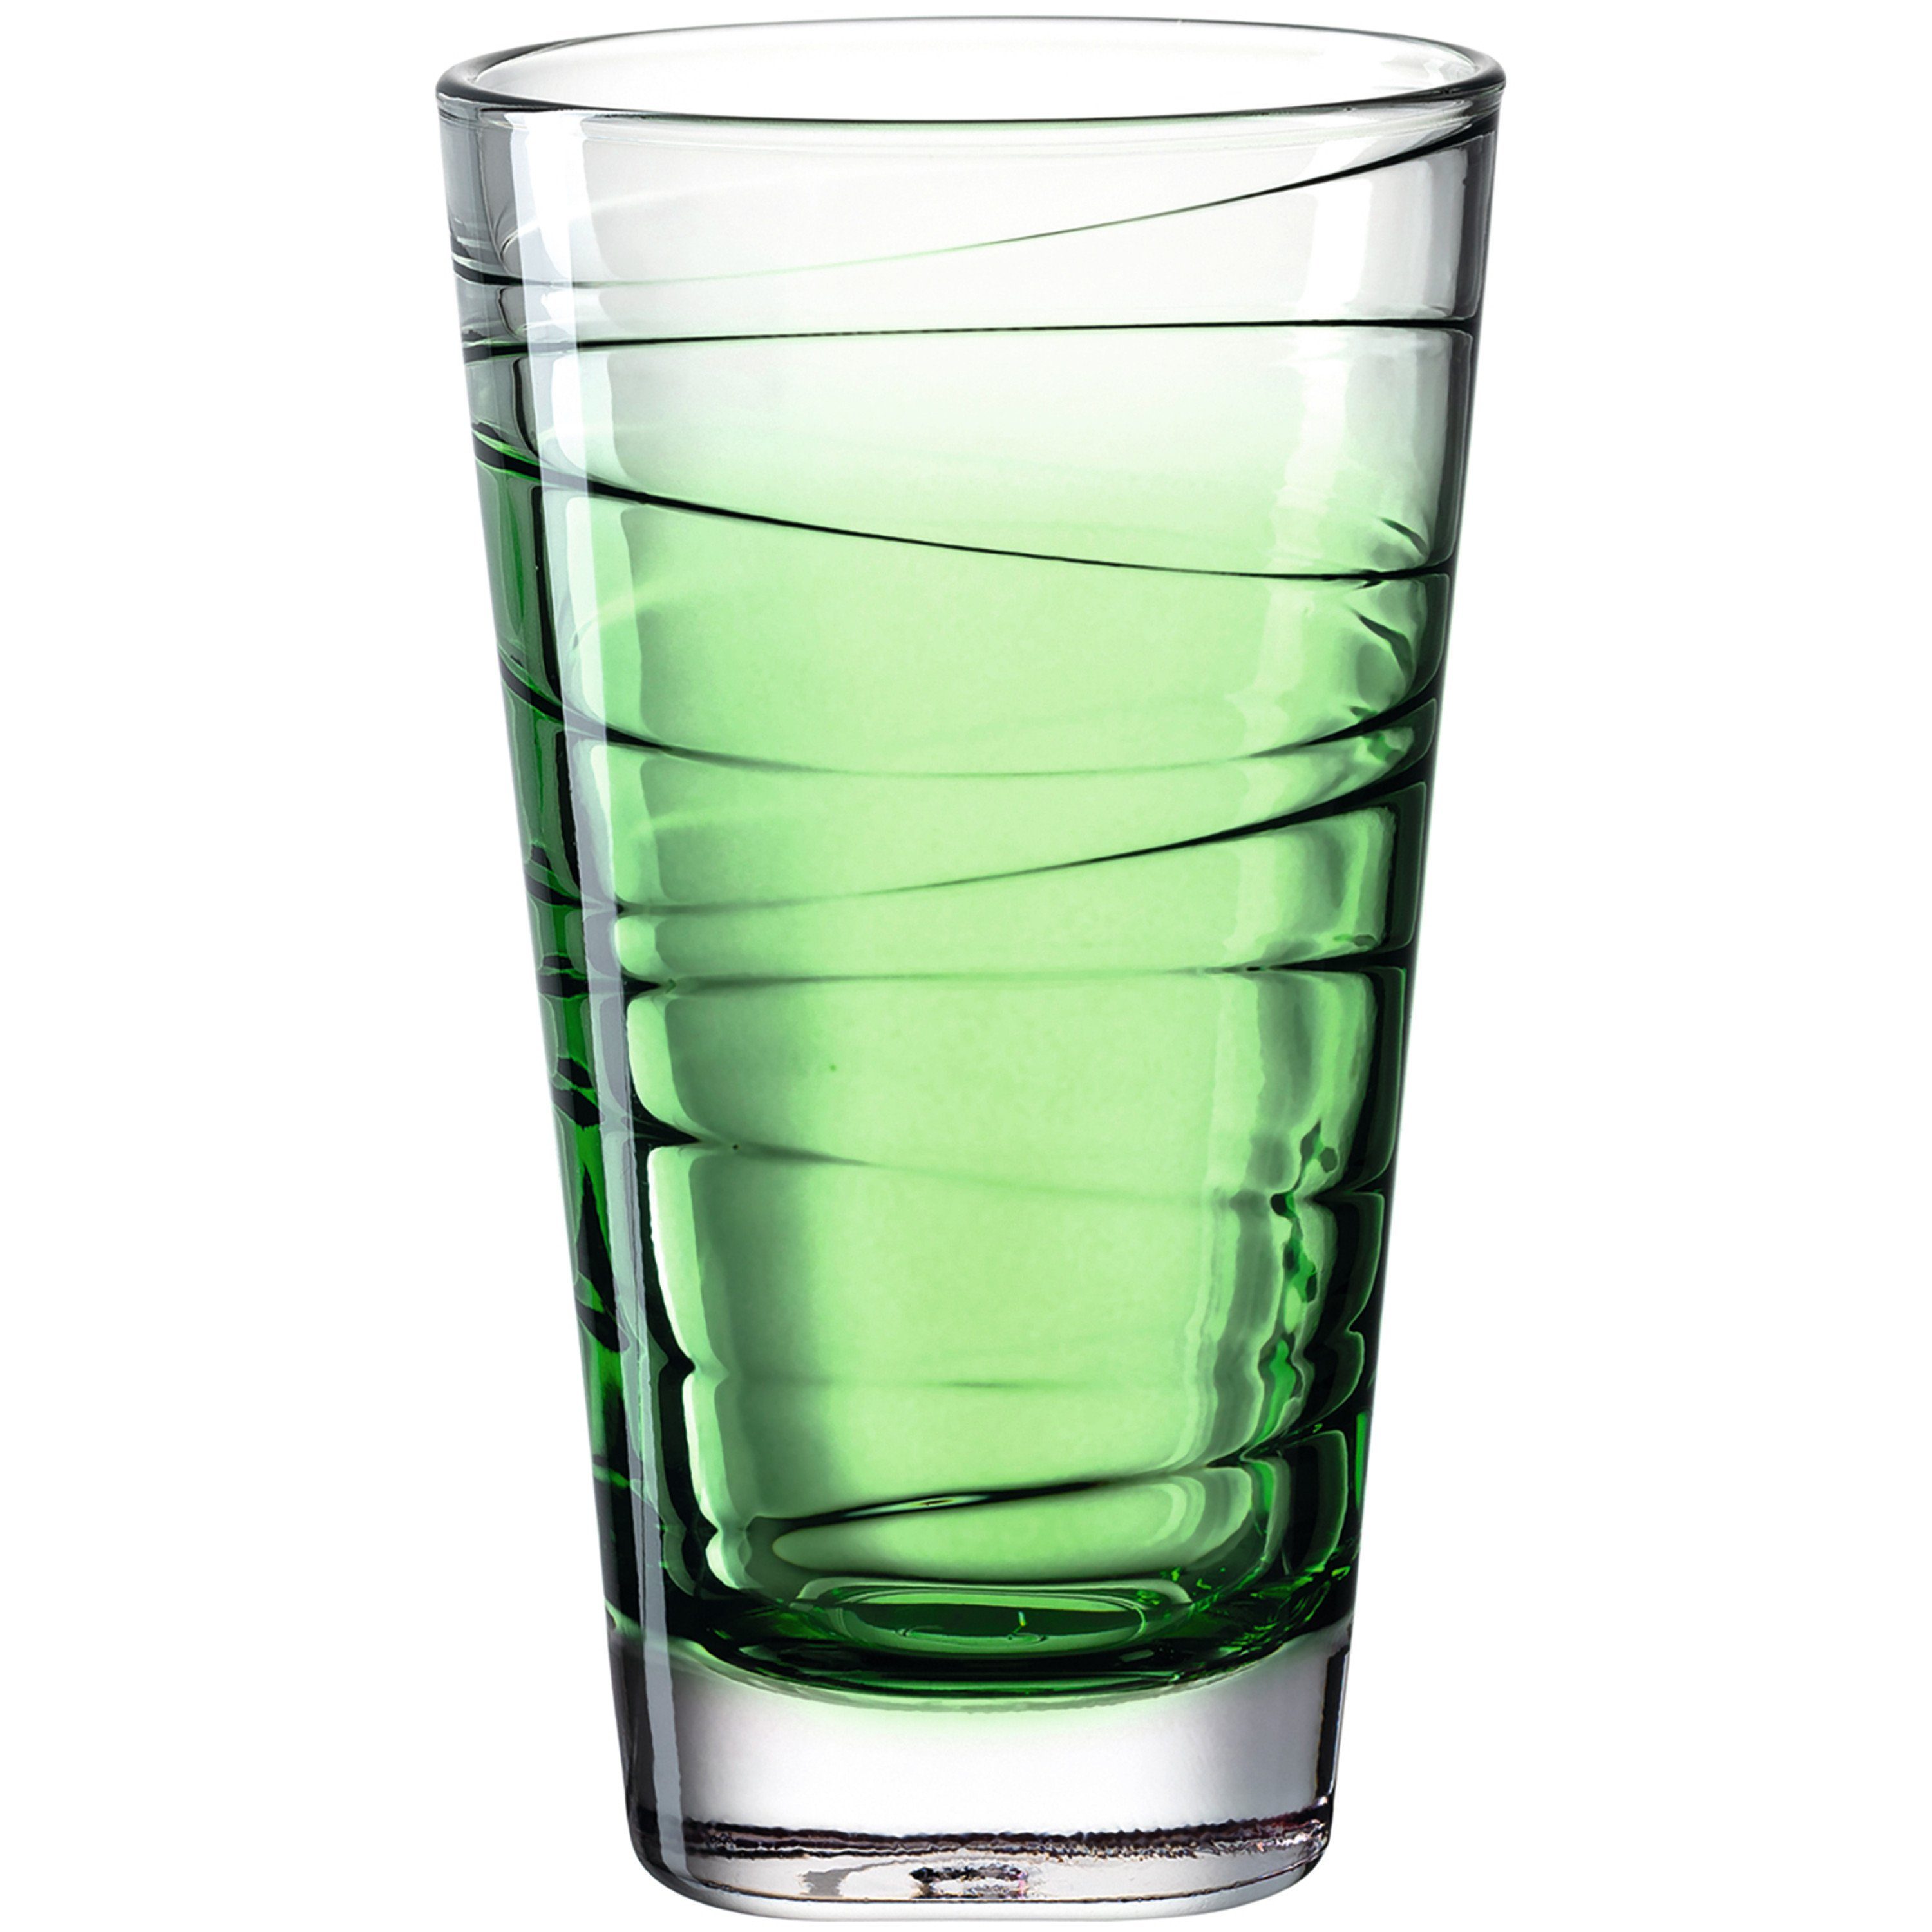 LEONARDO Glas LEONARDO Glas aus der Serie VARIO, Füllmenge 300 ml., Buntglas, grün, Glas